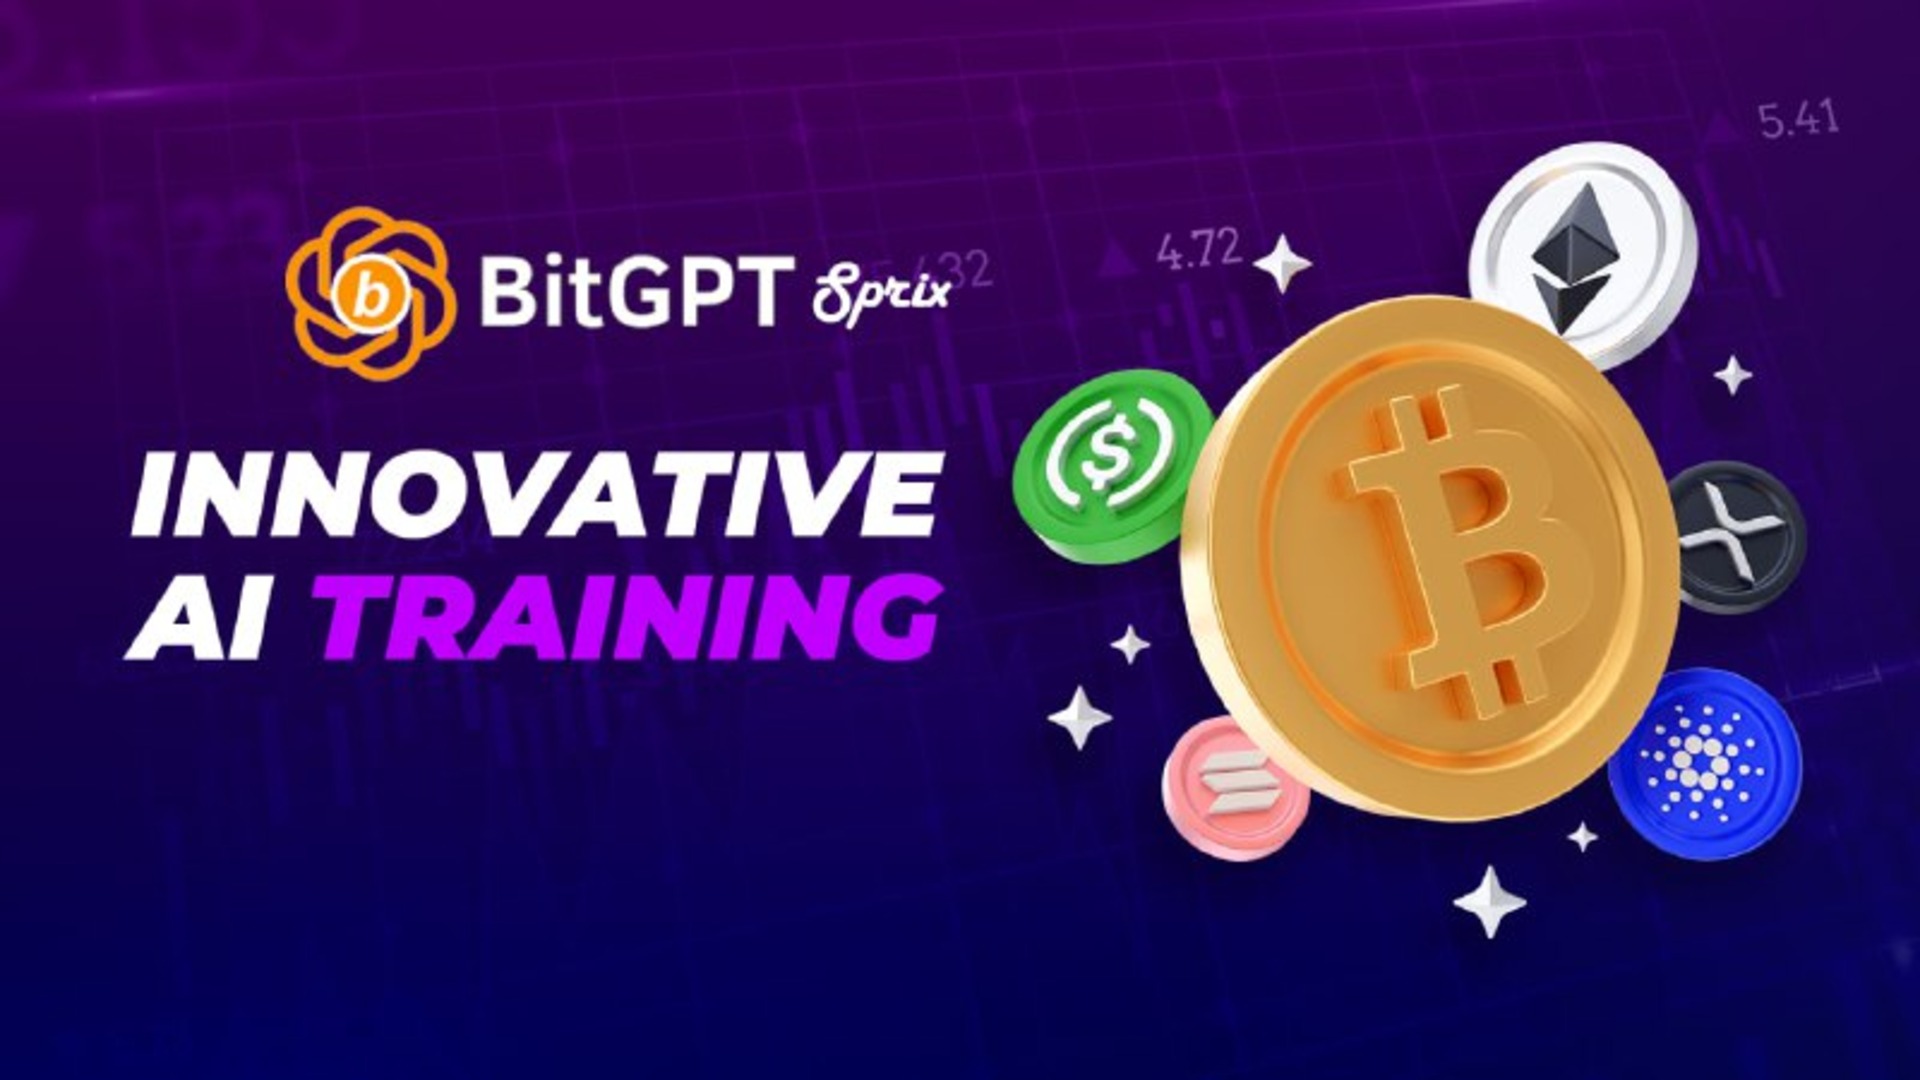 Bit Sprix GPT Review – Is This a Legit Trading Platform?